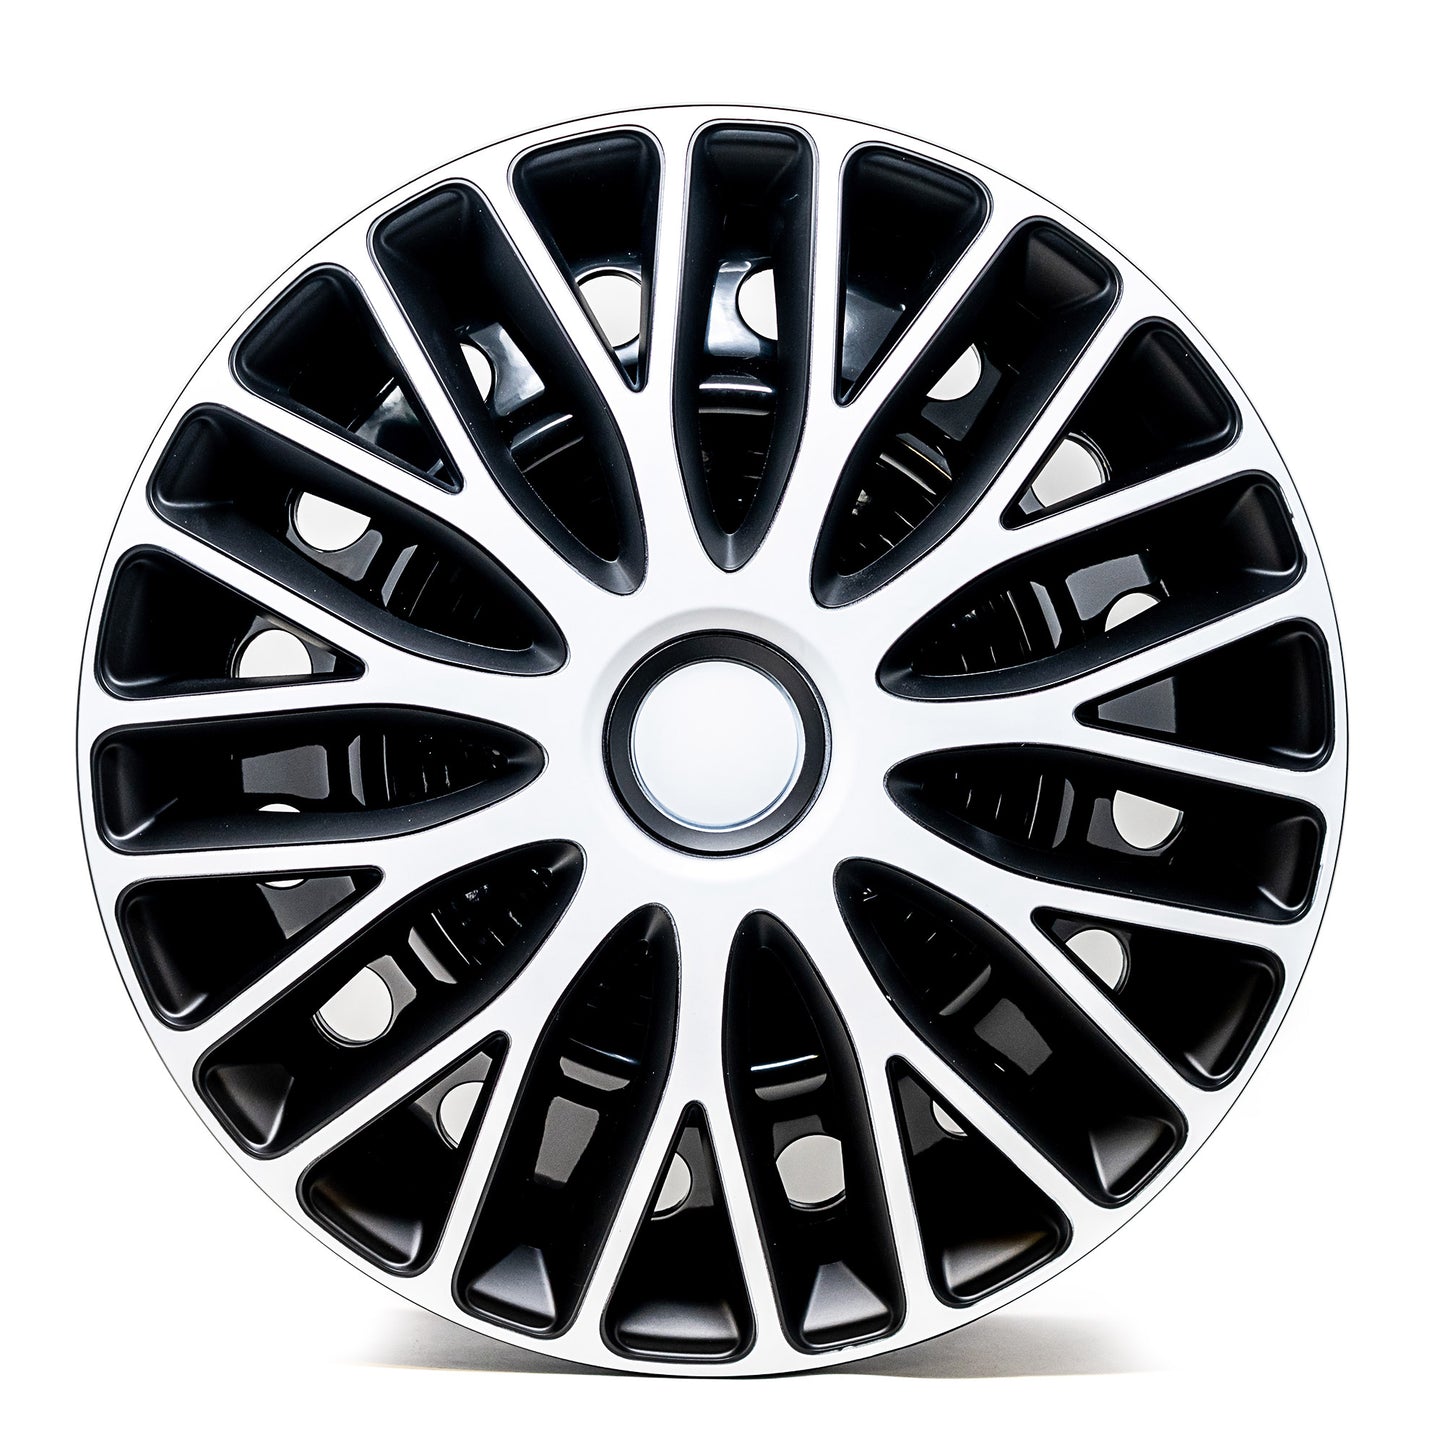 Vasco Wheel Cover Kit - White & Black (4 Pack)